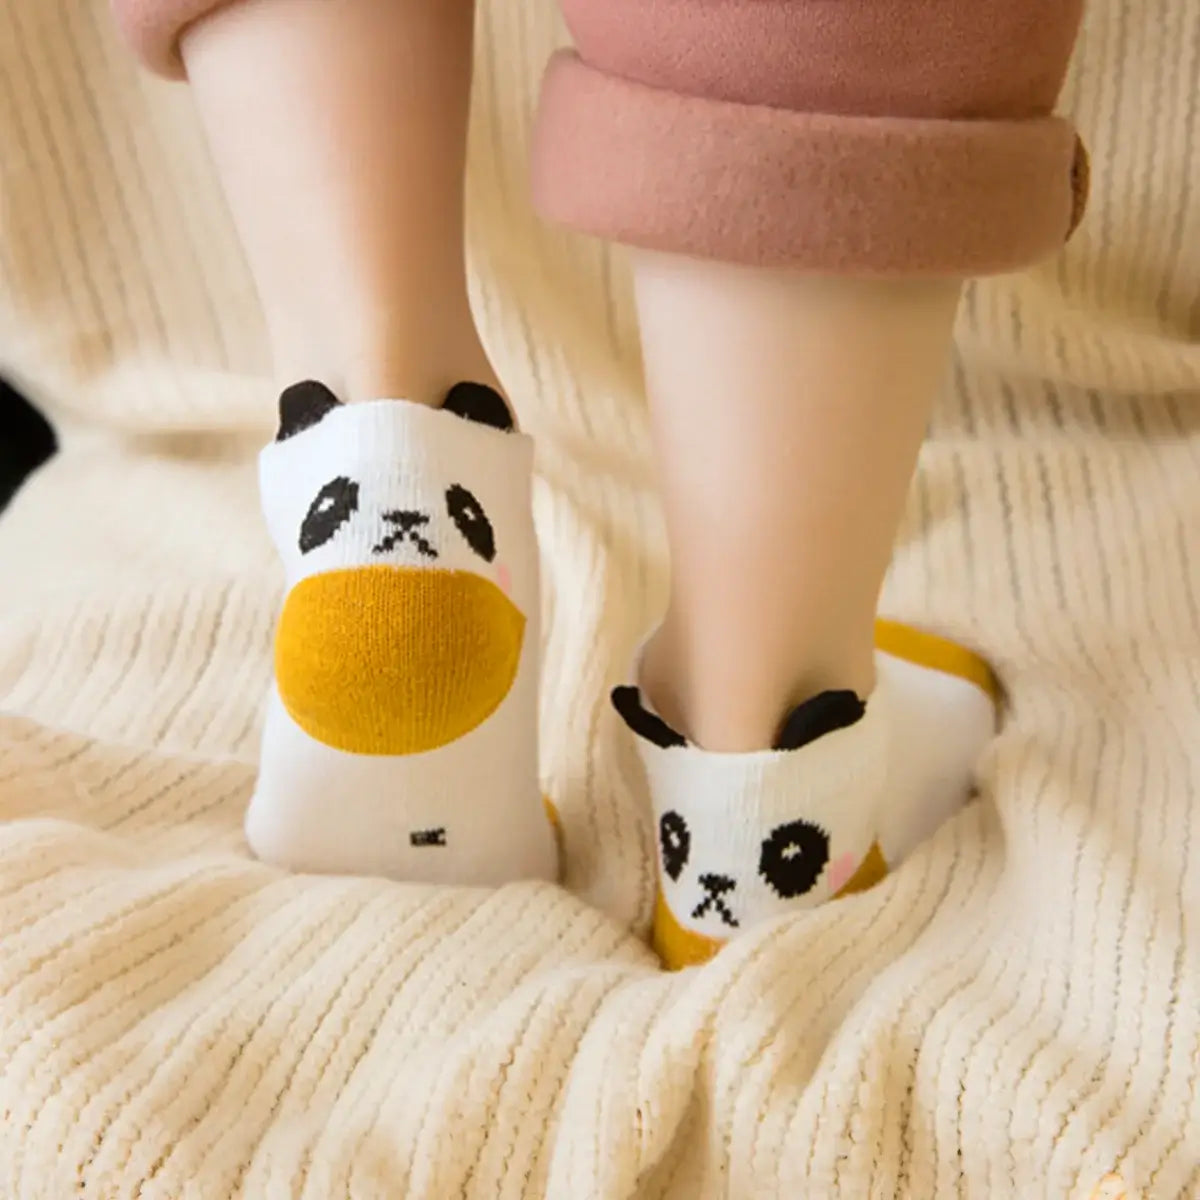 Chaussettes Bébé 0-9 mois Chat Panda BabyOops